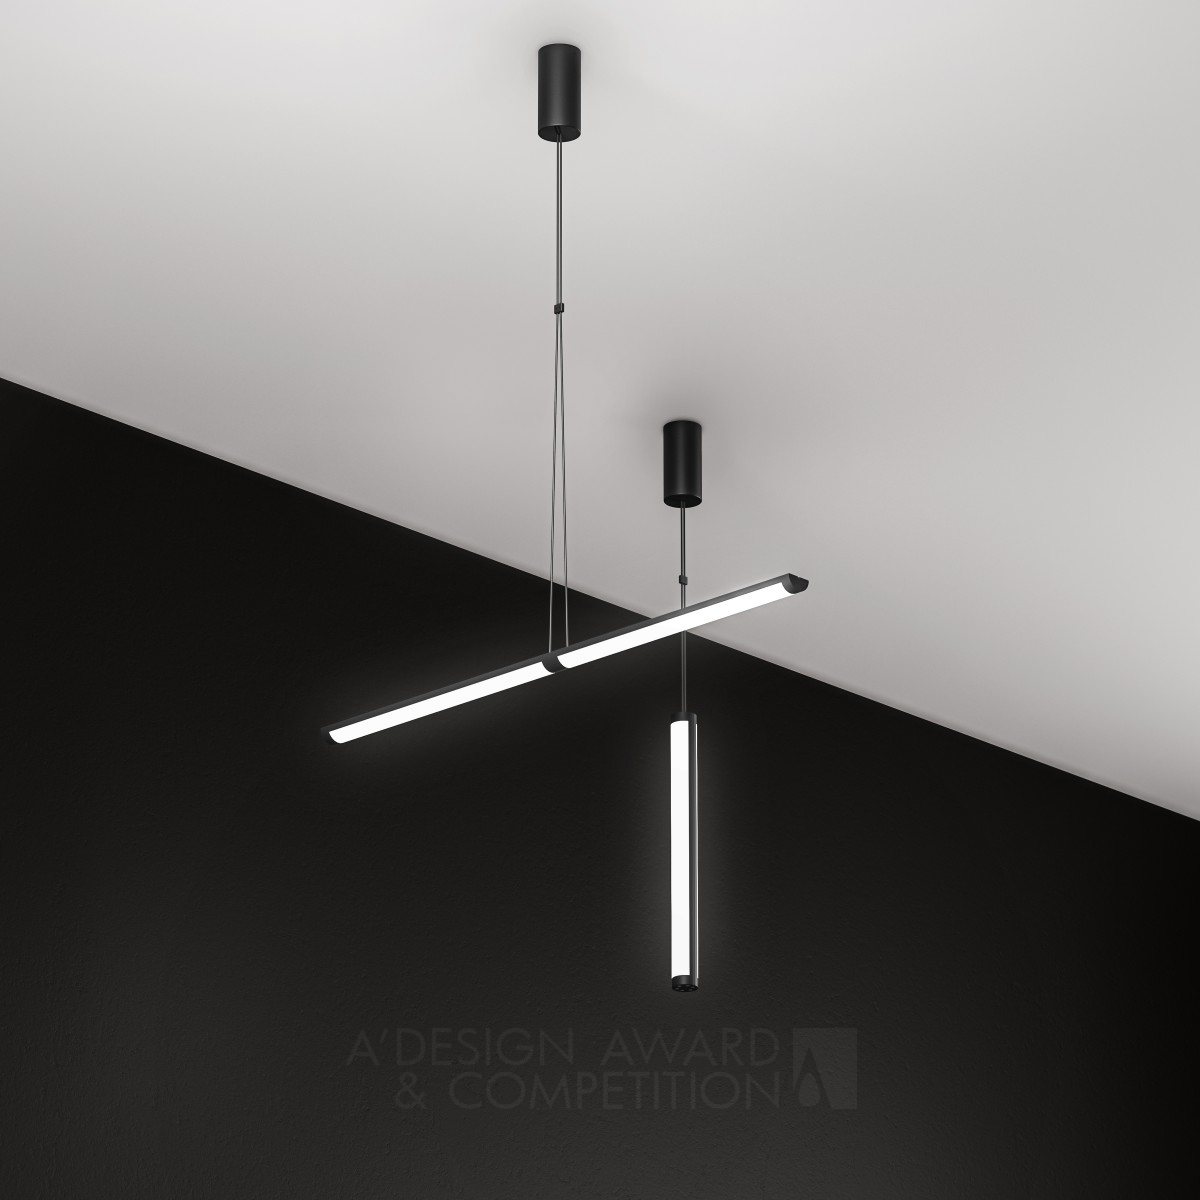 Суперсимметрия: Инновационный дизайн светильника от Алексея Данилина